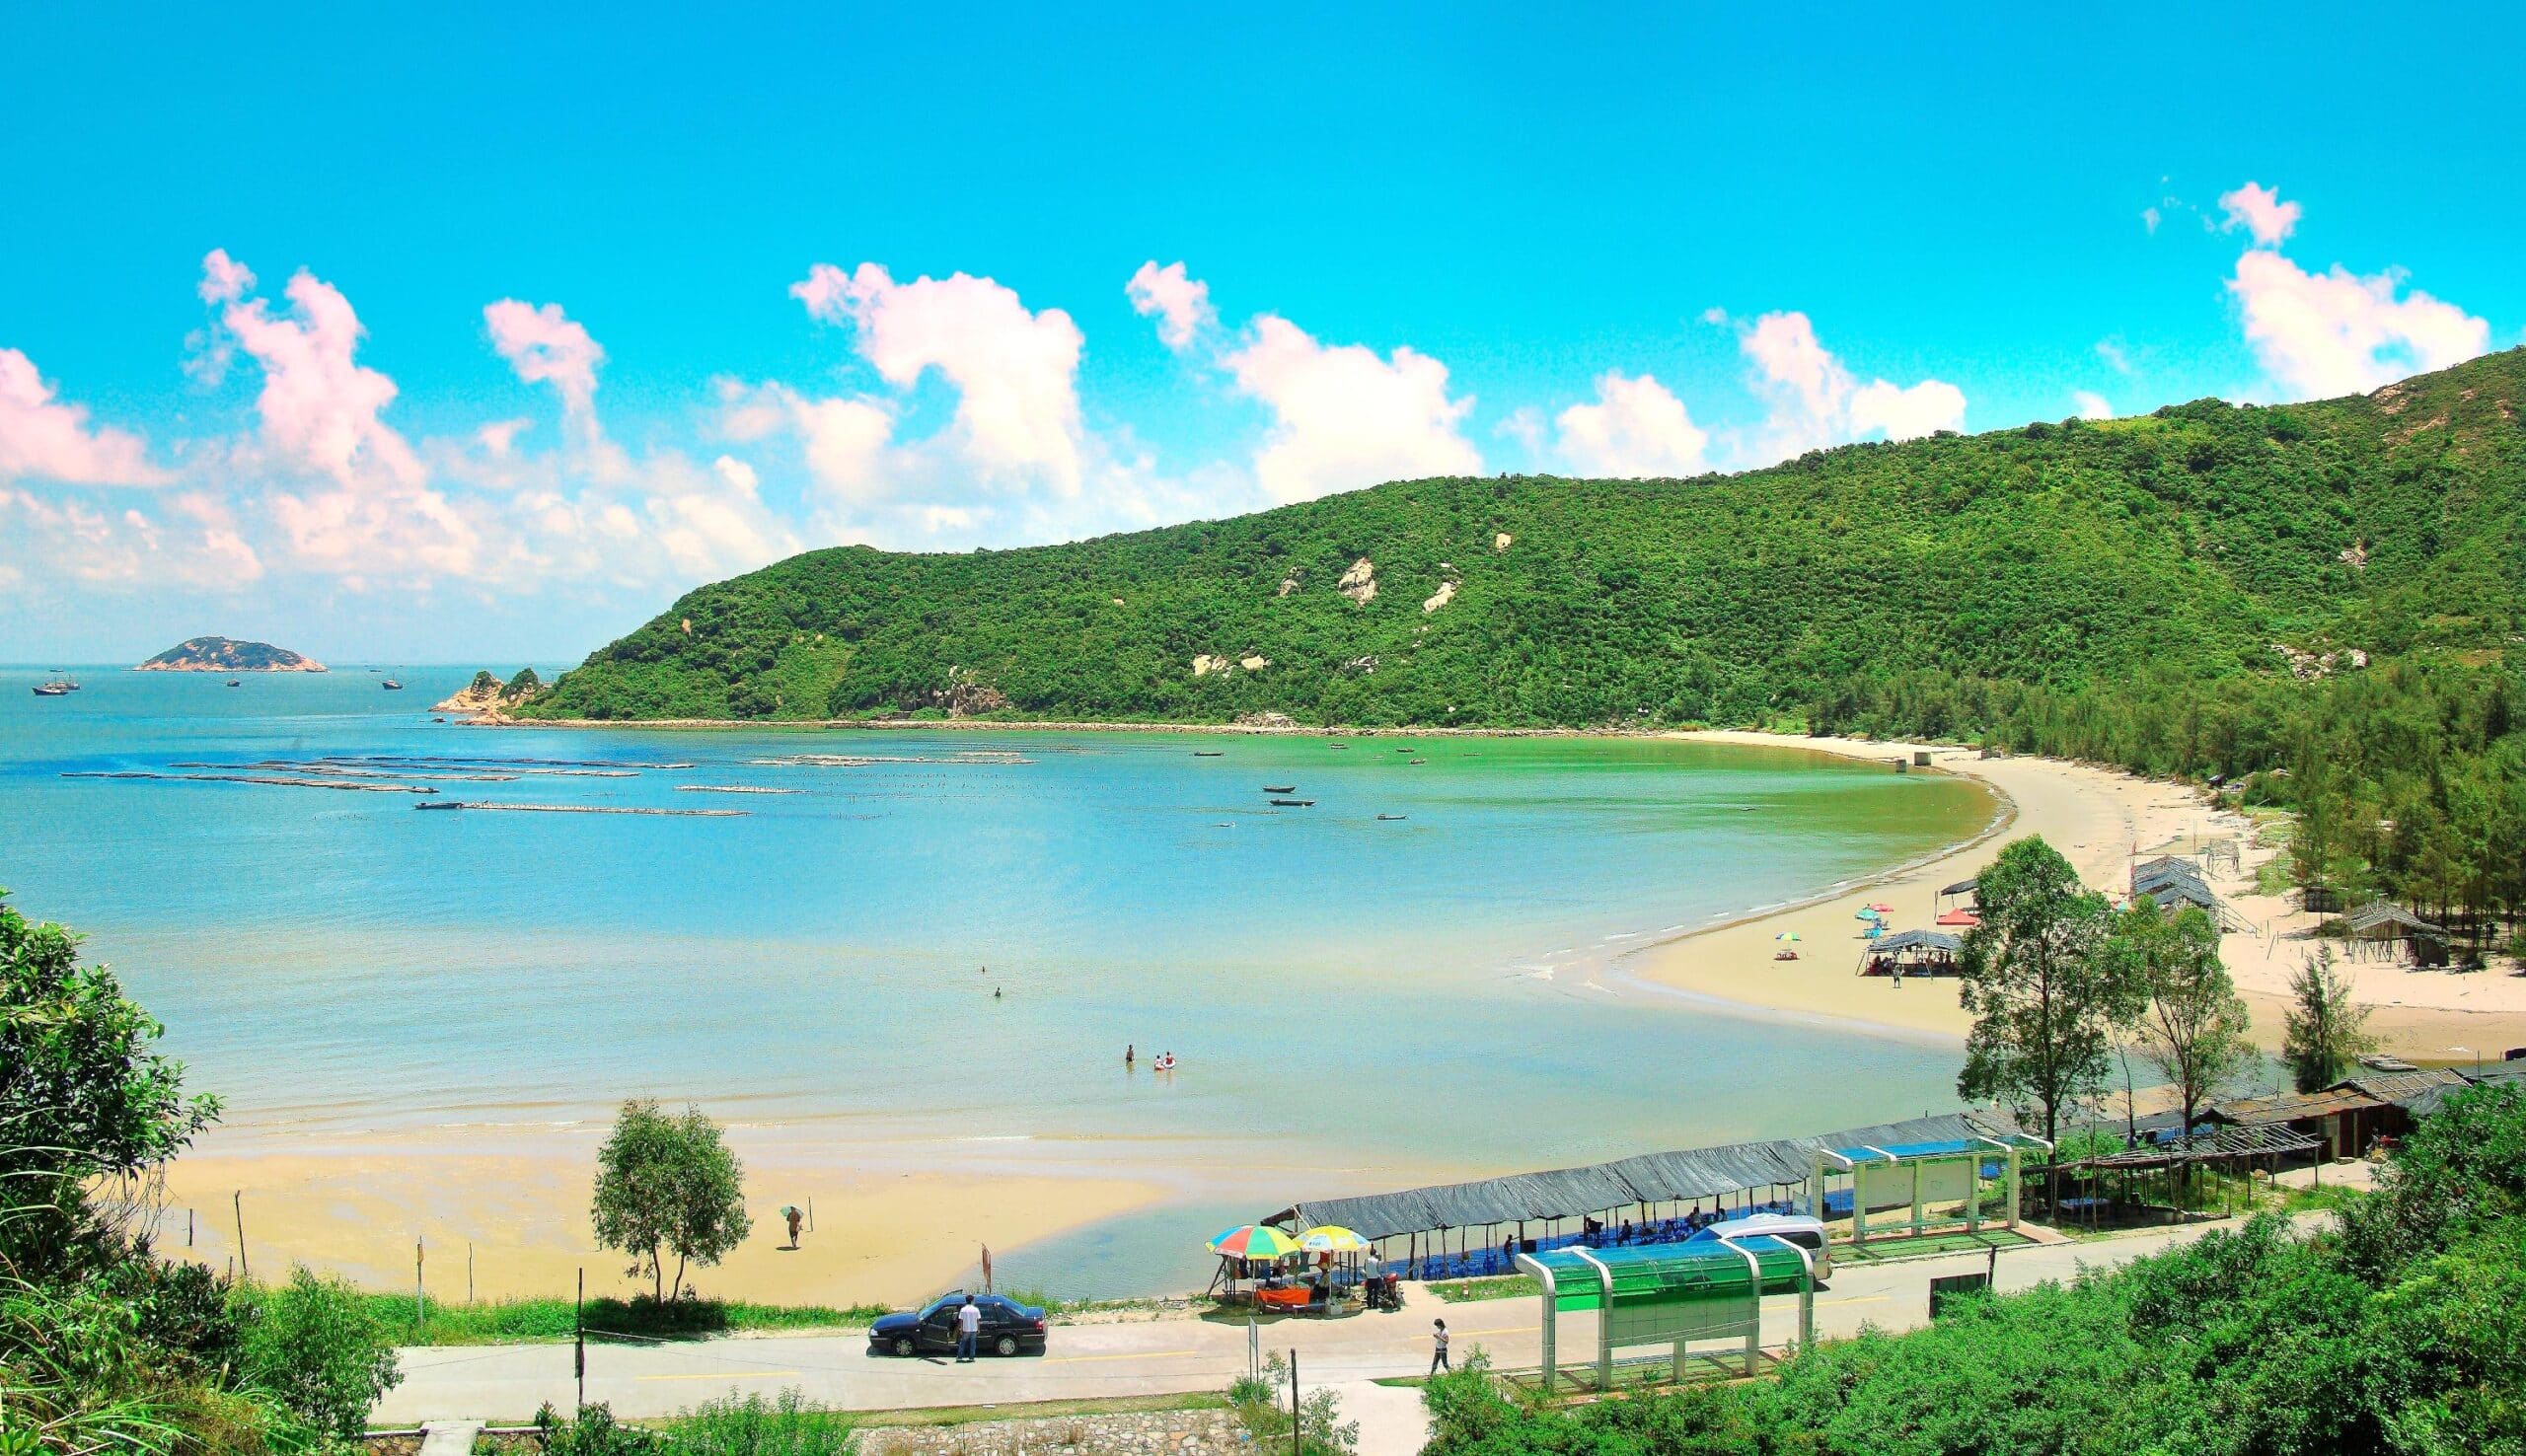 飞沙滩海滨旅游区位于珠海西部高栏岛的东南部,被评为珠海十景.